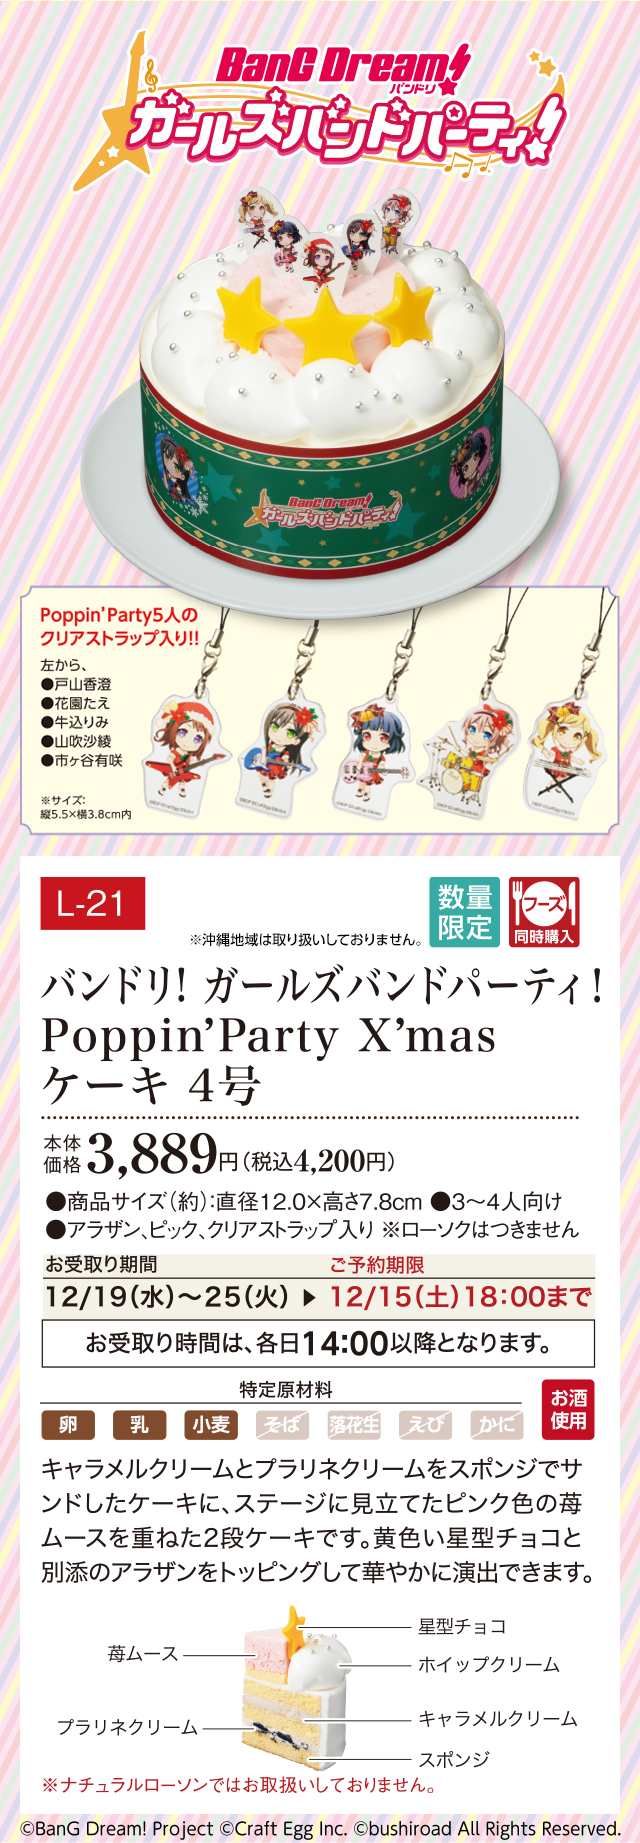 バンドリ! ガールズバンドパーティー! PoppinParty Xmasケーキ 4号 本体価格 3,889円(税込4,200円)